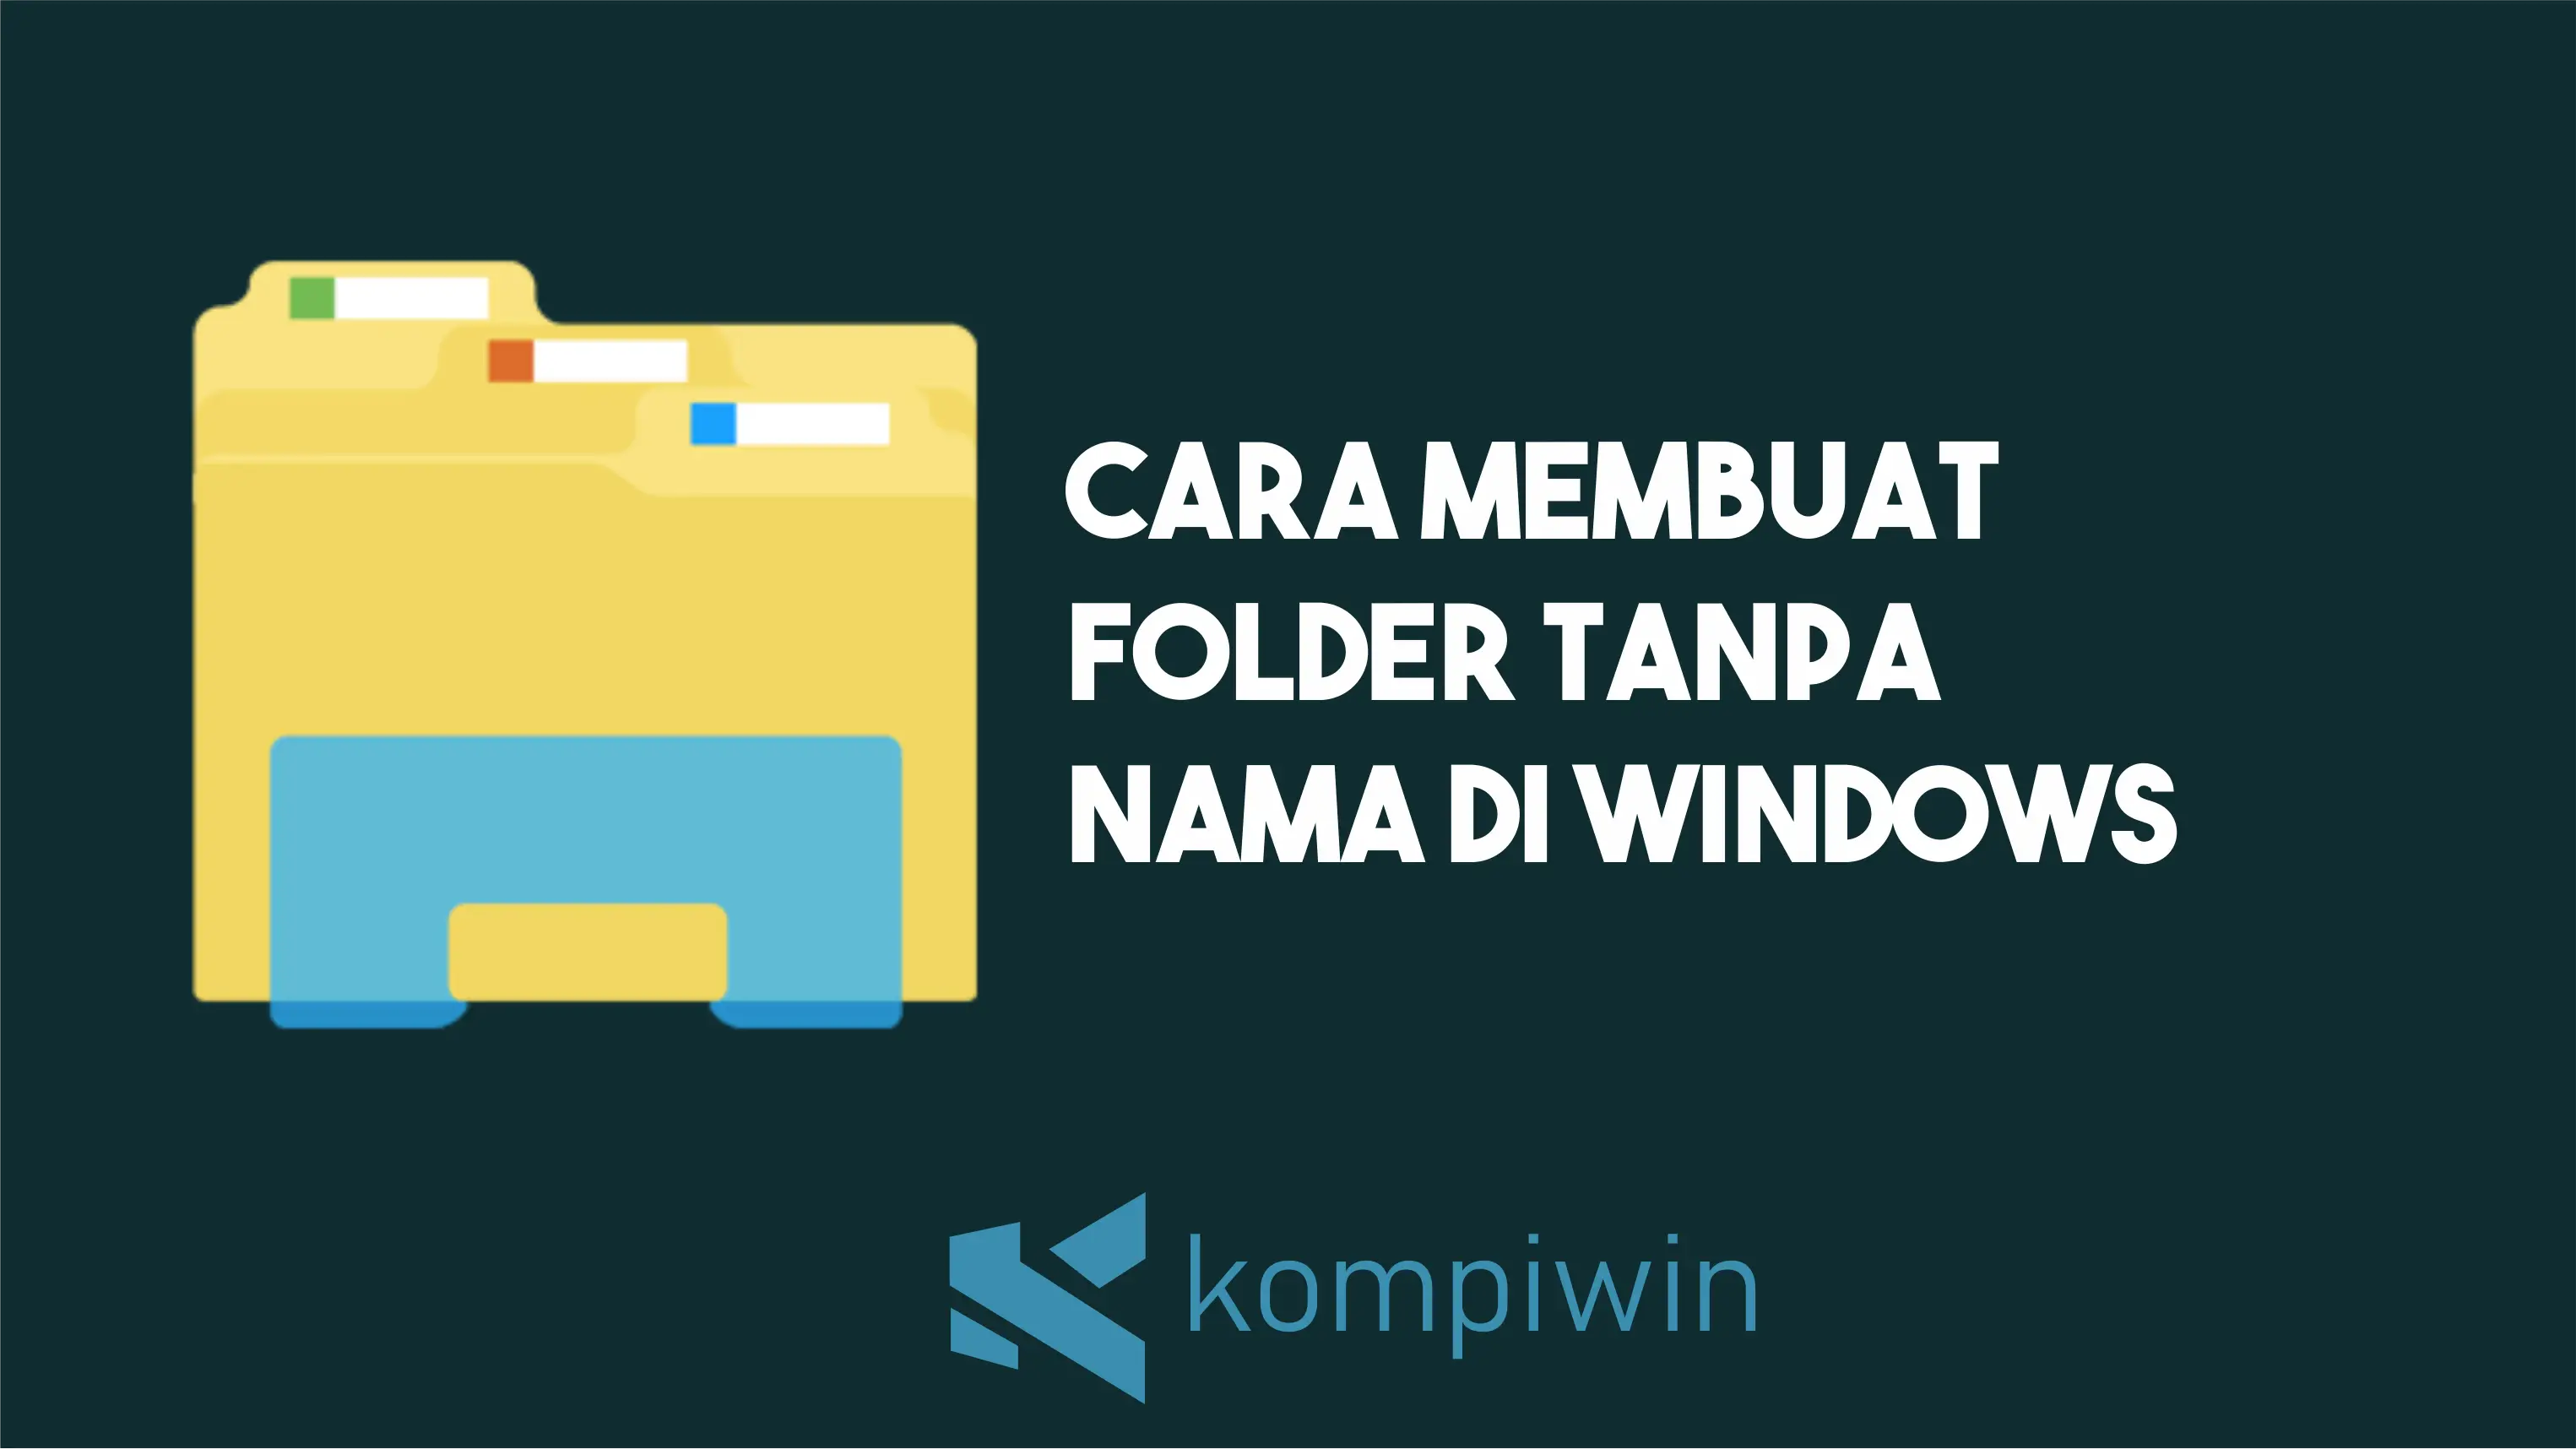 Cara Membuat Folder Tanpa Nama Di Windows 1